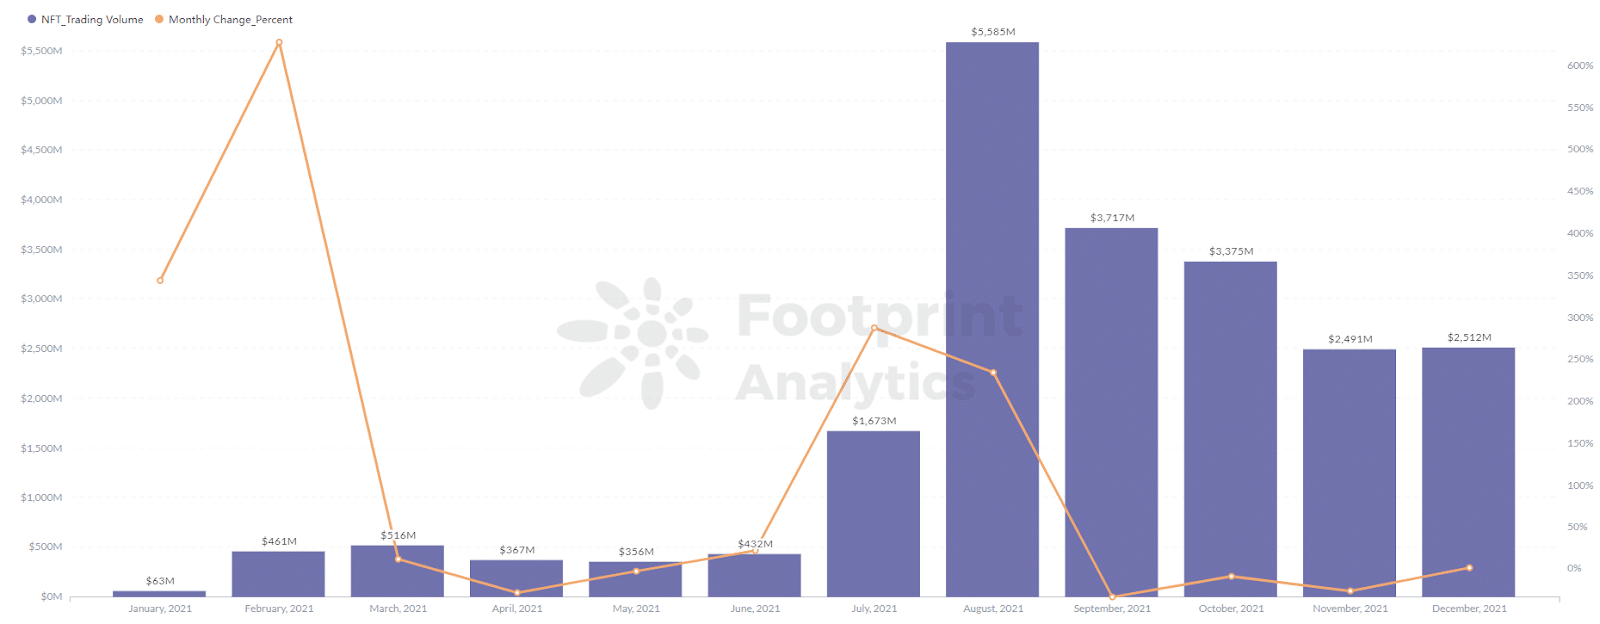 Footprint Analytics - Objem obchodů s projekty NFT dosáhl v srpnu maxima 5 586 milionů